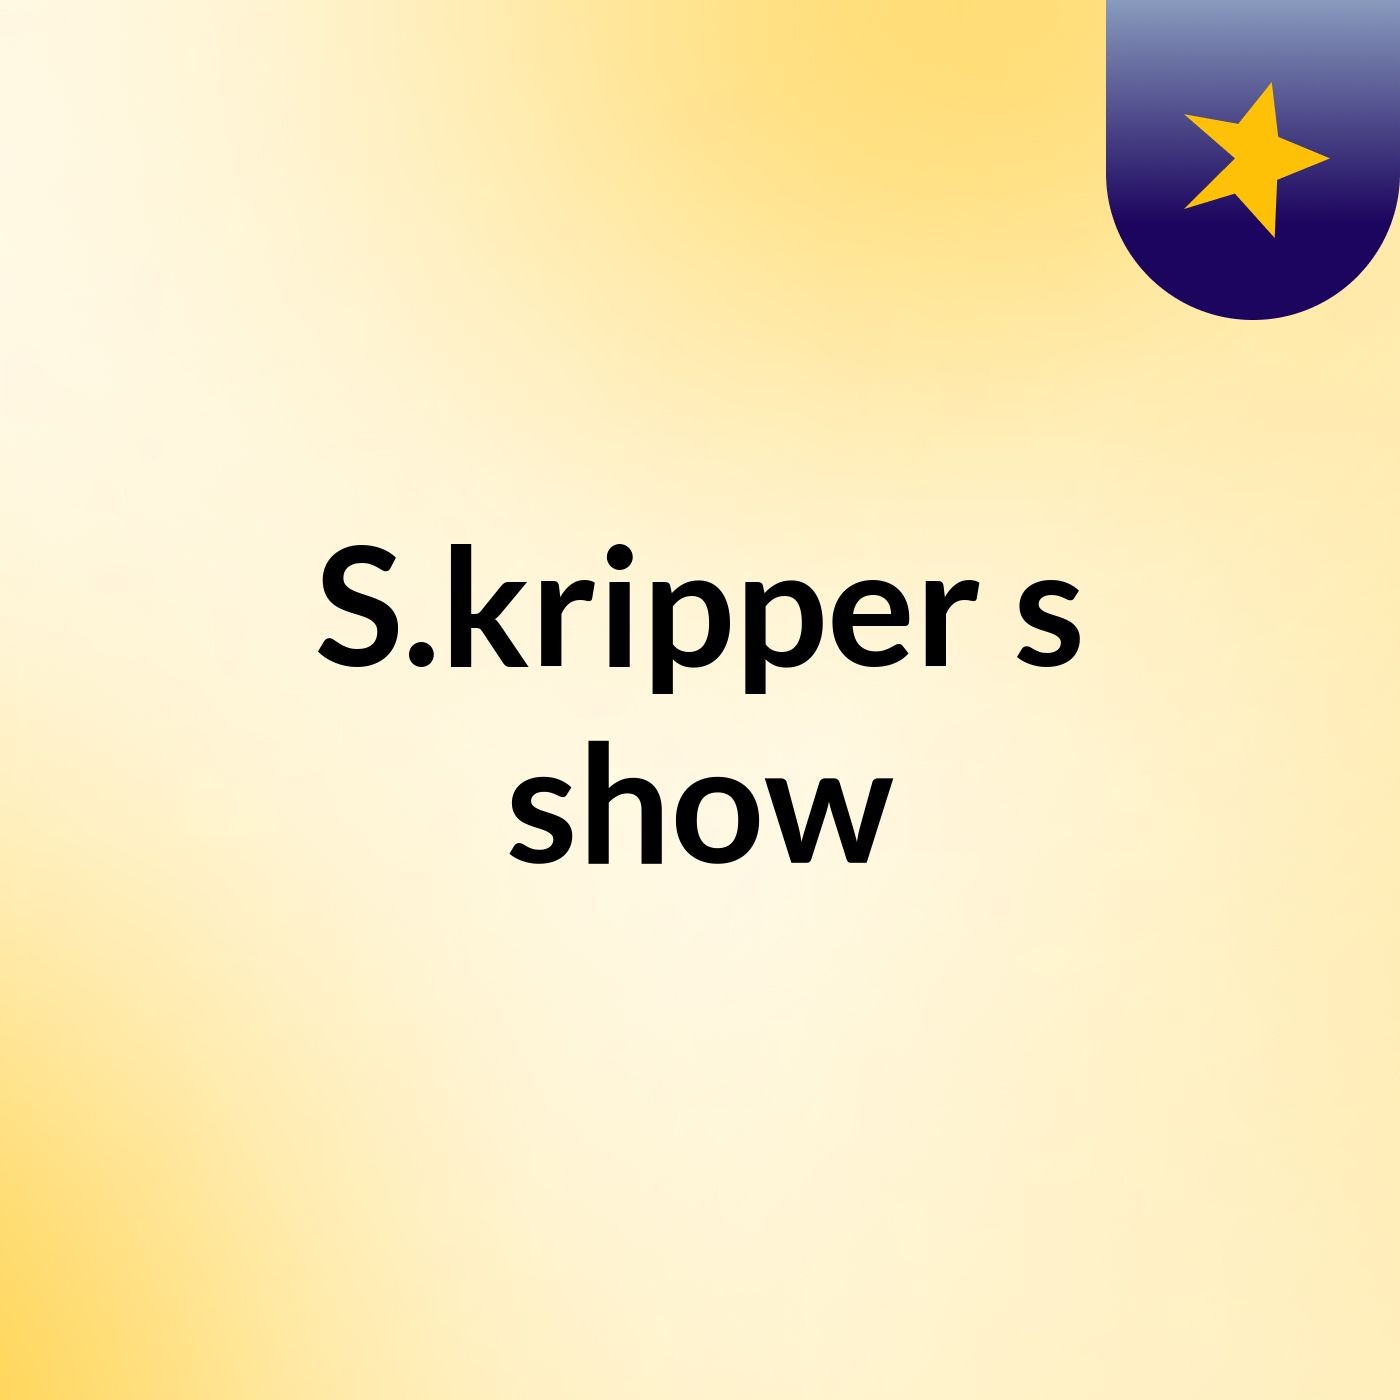 S.kripper's show